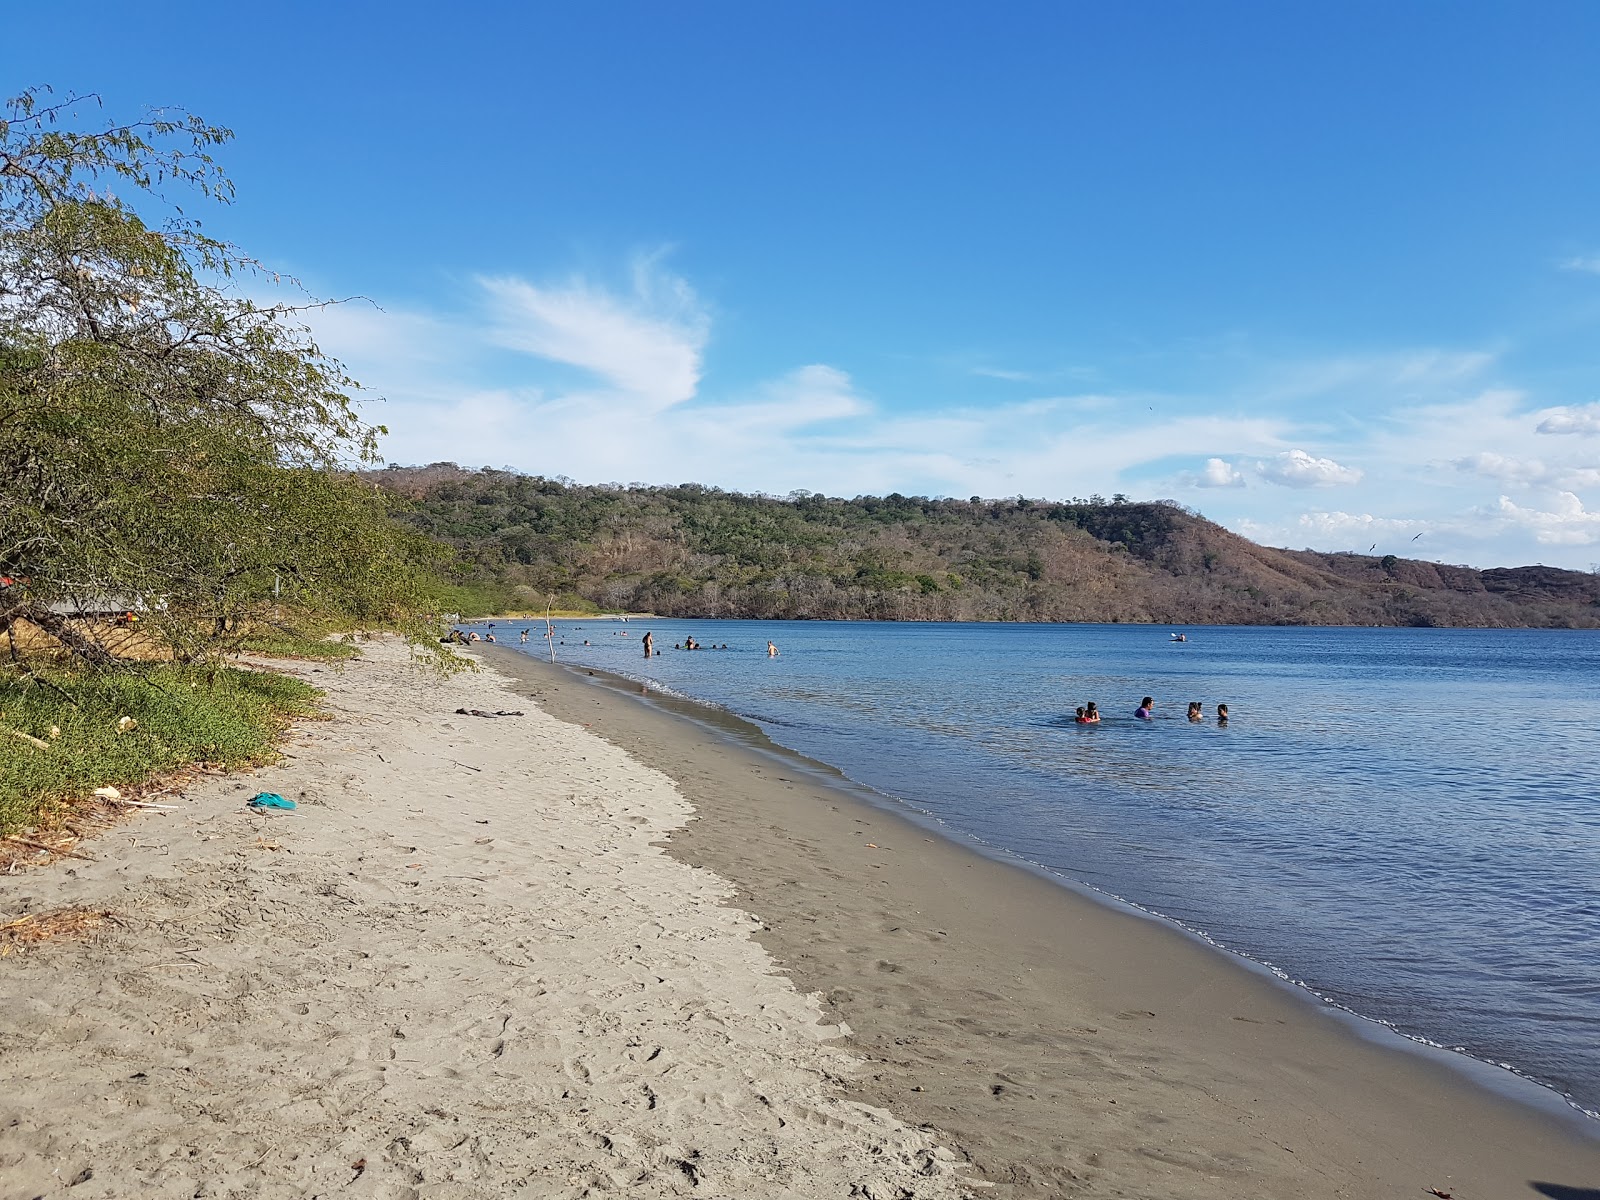 Zdjęcie Iguanita beach z poziomem czystości wysoki